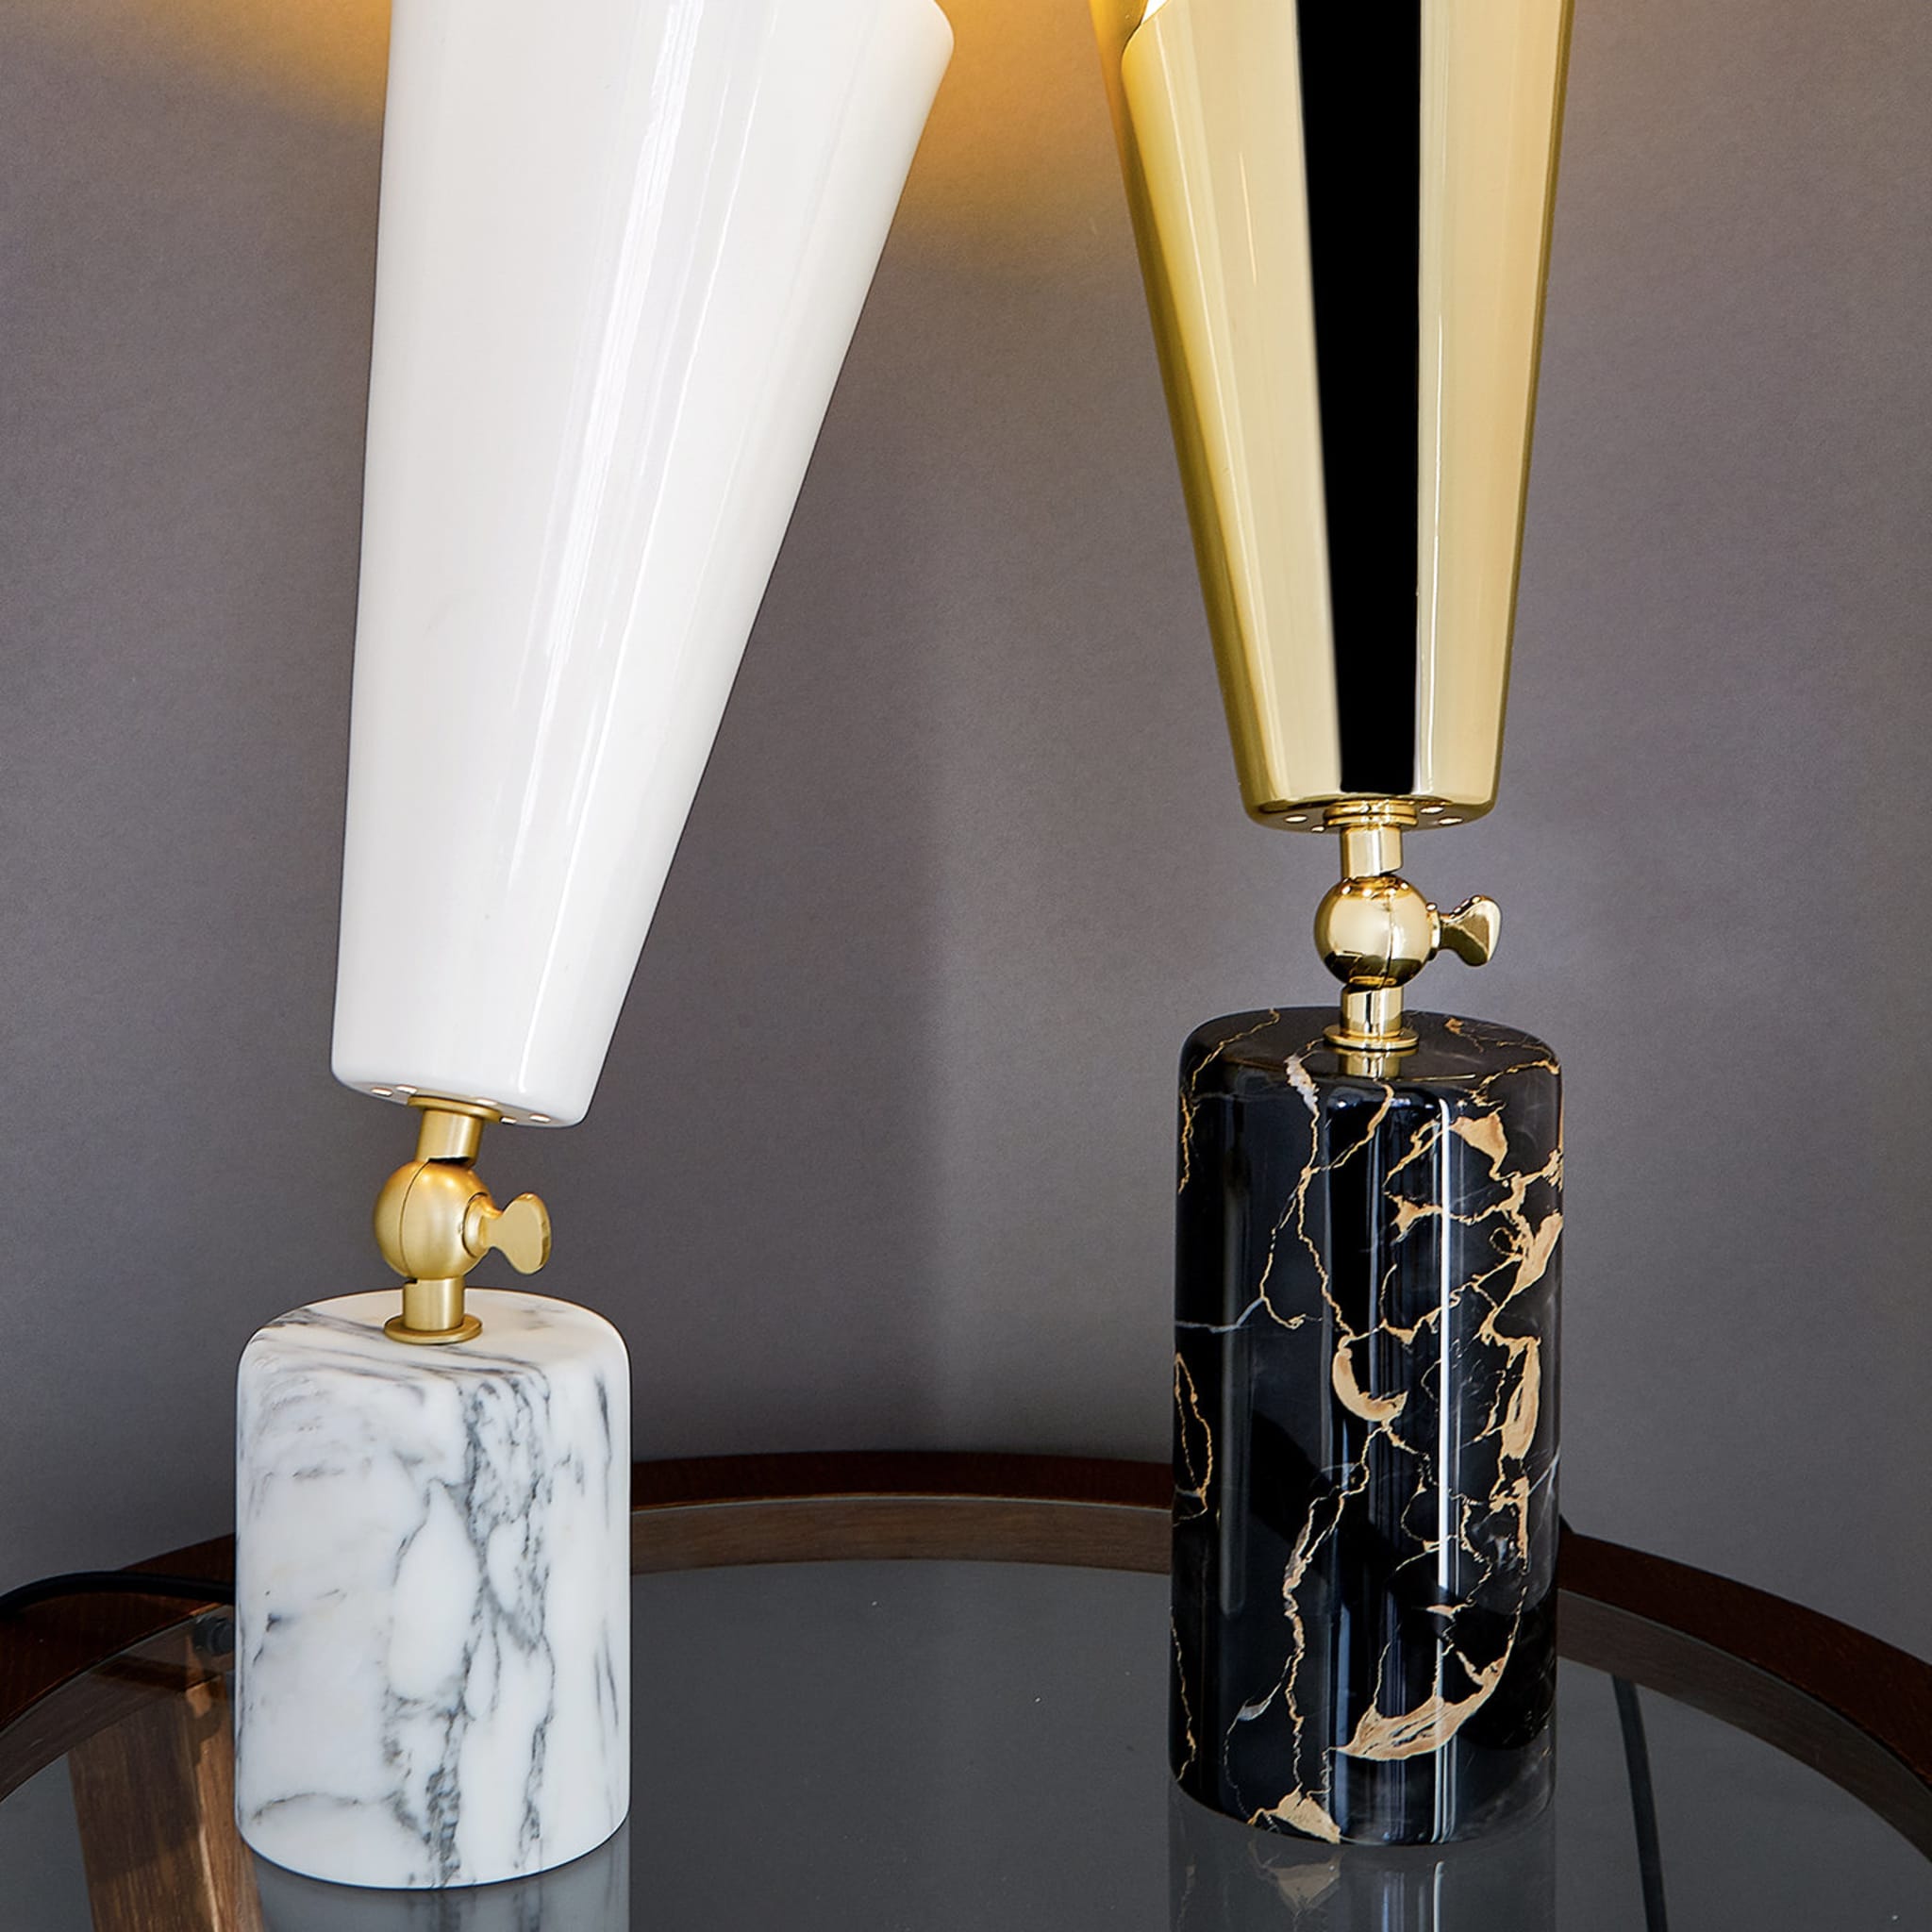 Vox Alta Table Lamp by Lorenza Bozzoli in Portoro Marble - Alternative view 1